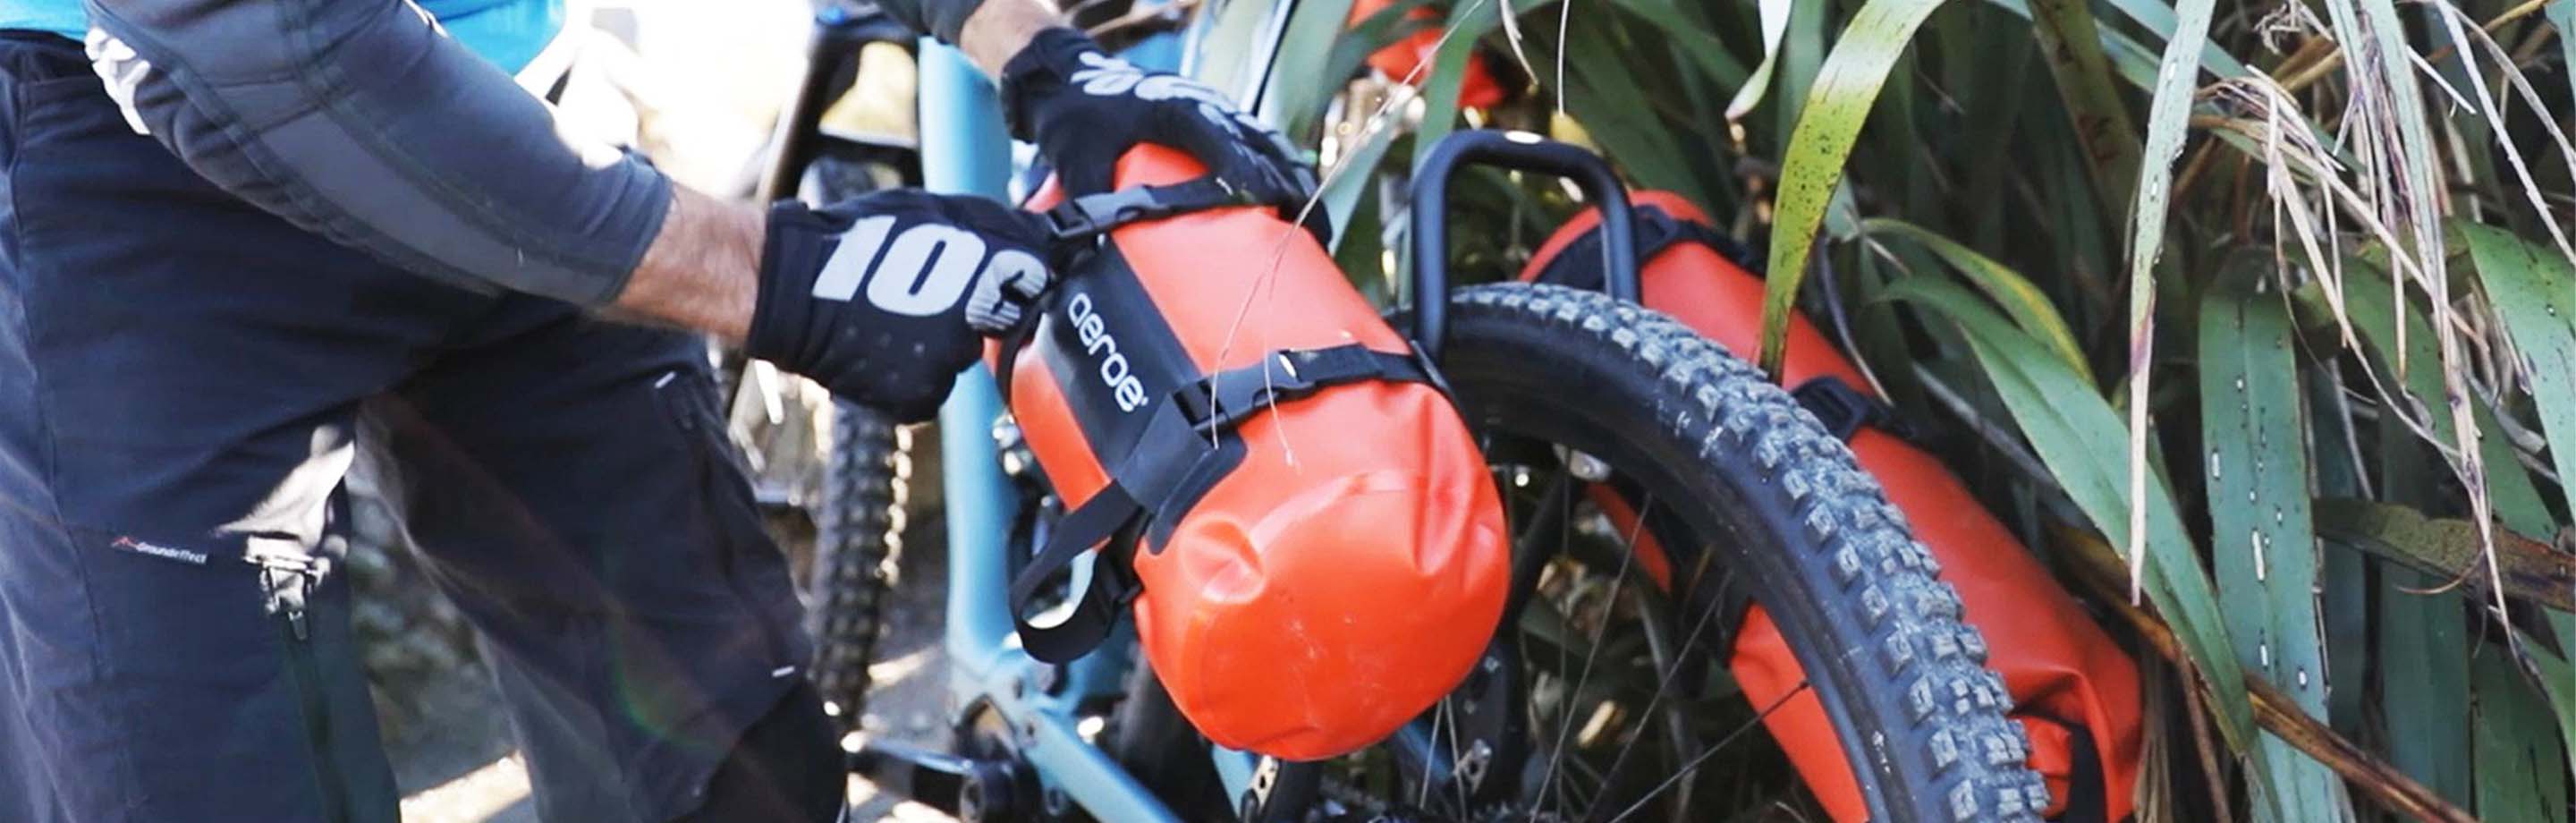 Aeroe – Spider Rear Rack bagagedrager en Dry Bag voor bikepacking